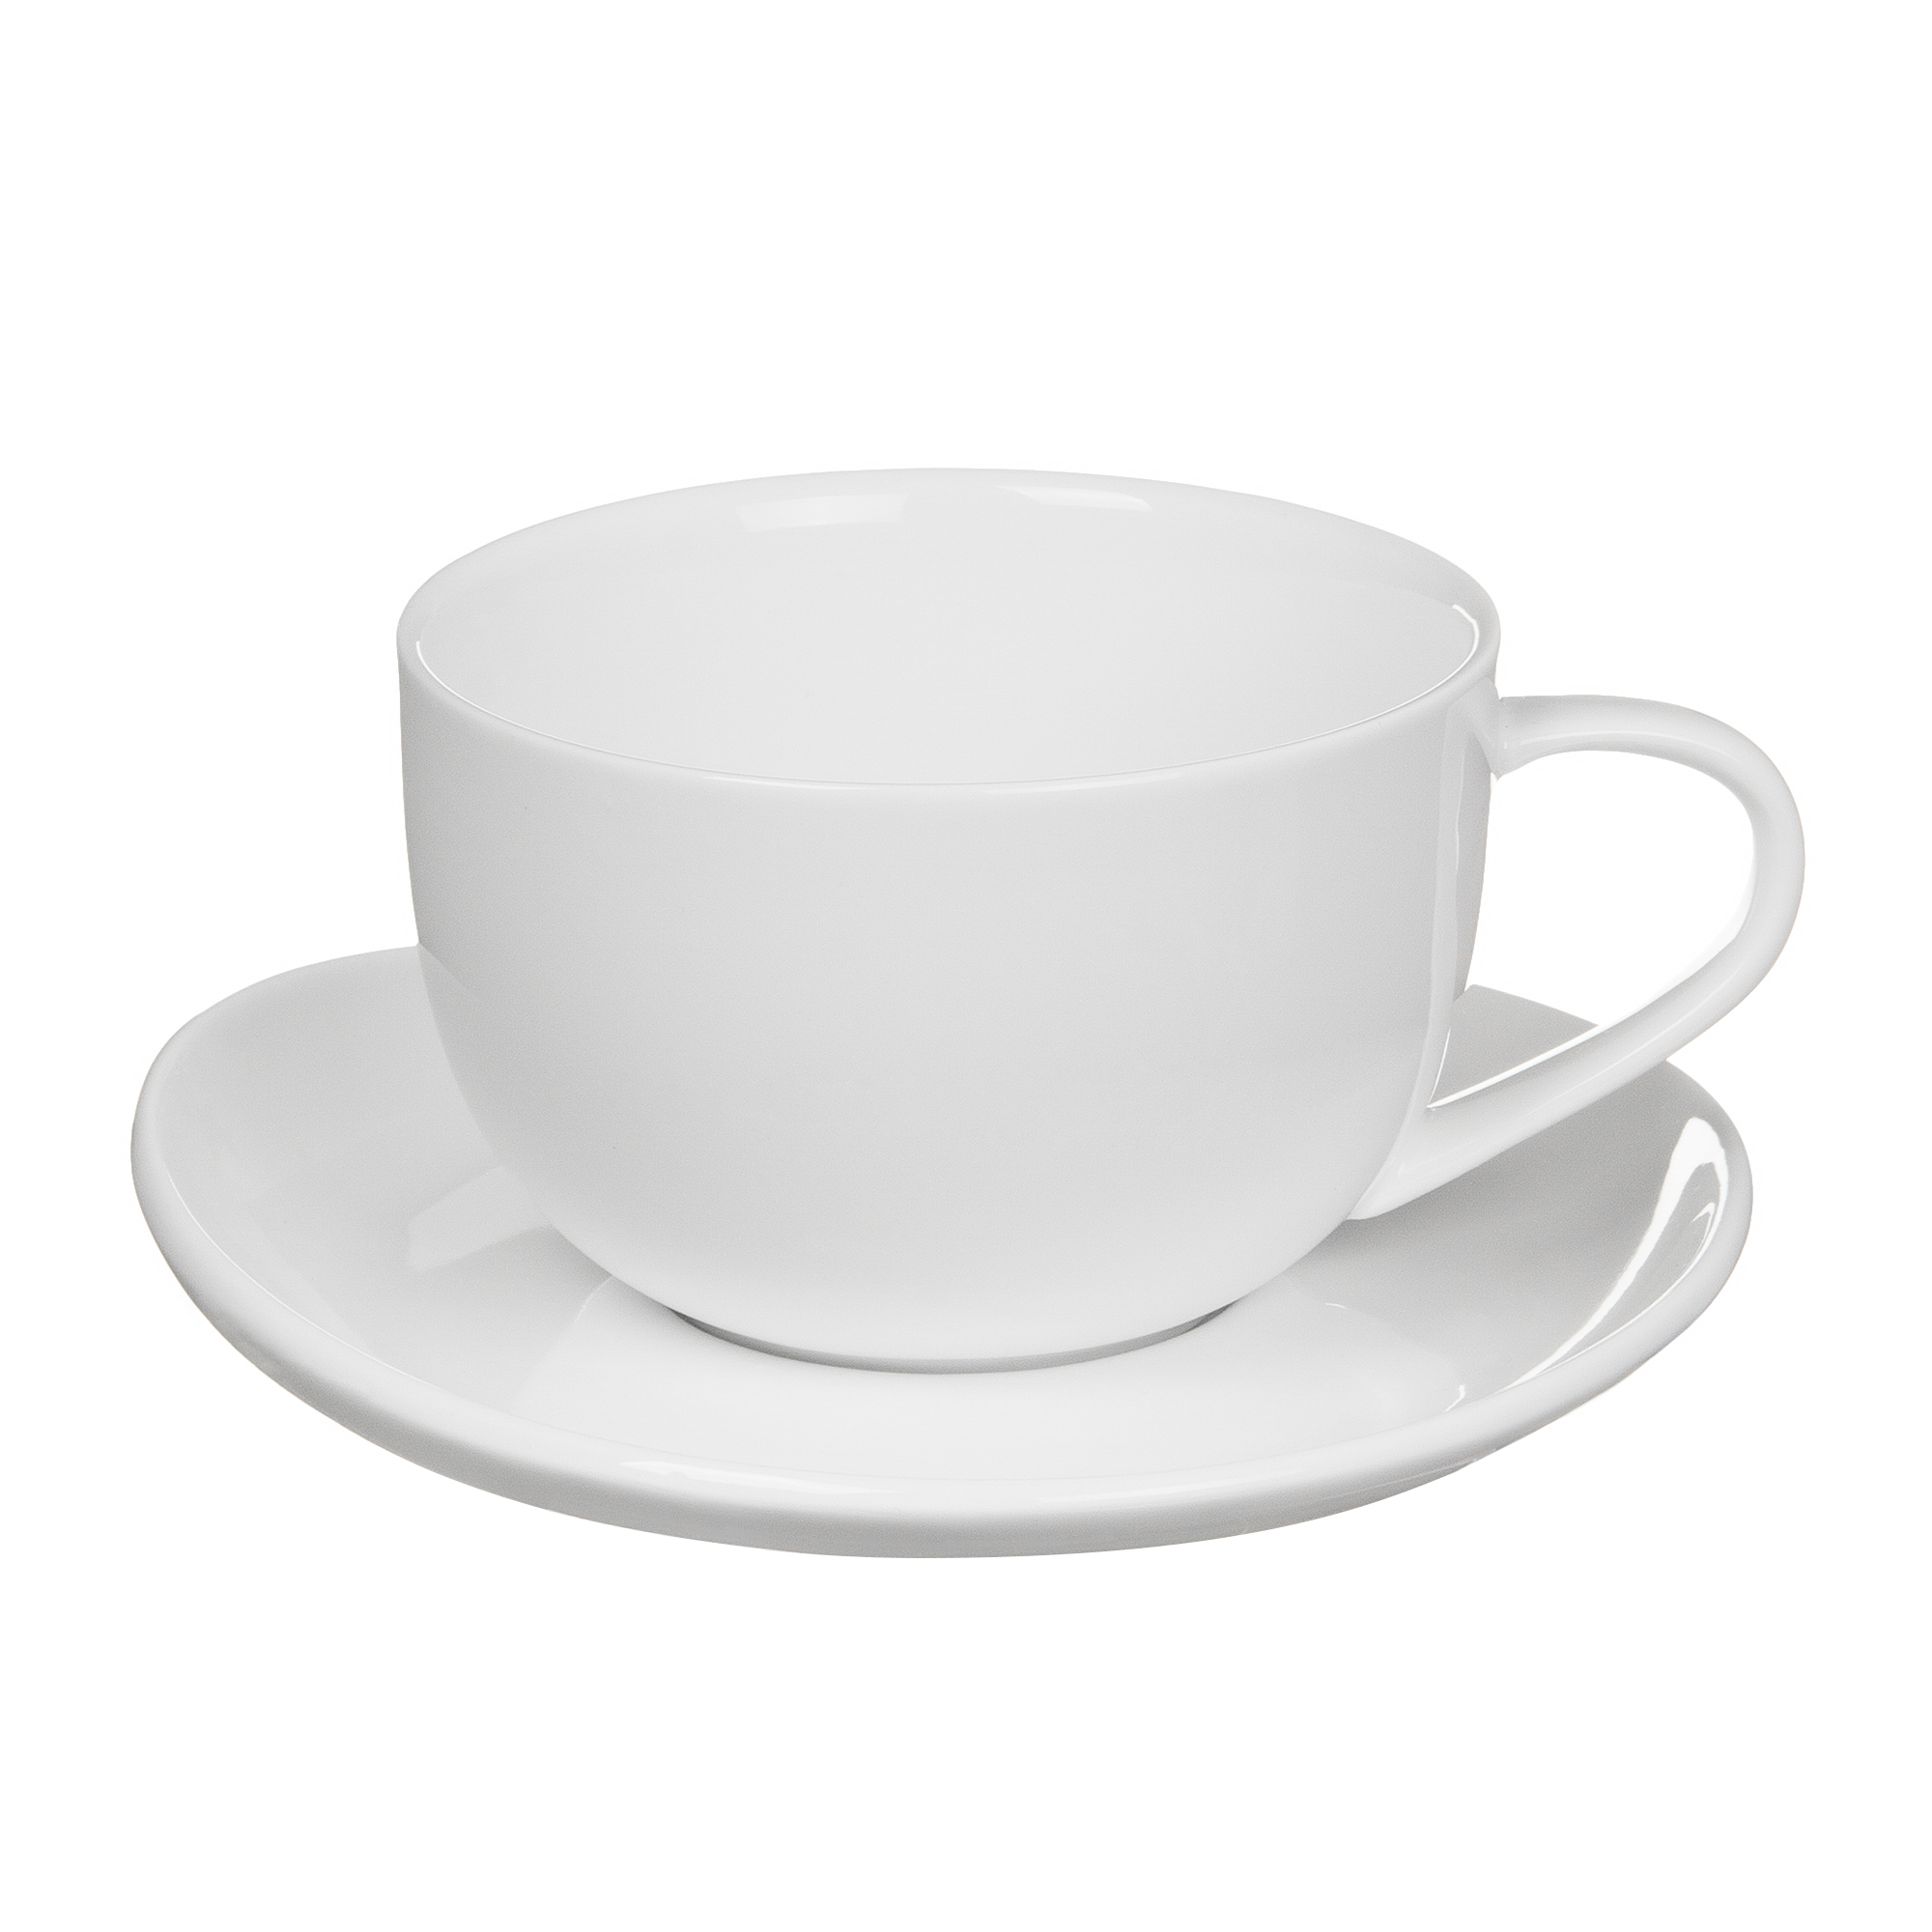 Пара чайная чашка + блюдце 350 мл Tudor TU9999-4 пара кофейная чашка блюдце 230 мл tudor tuc1062 4